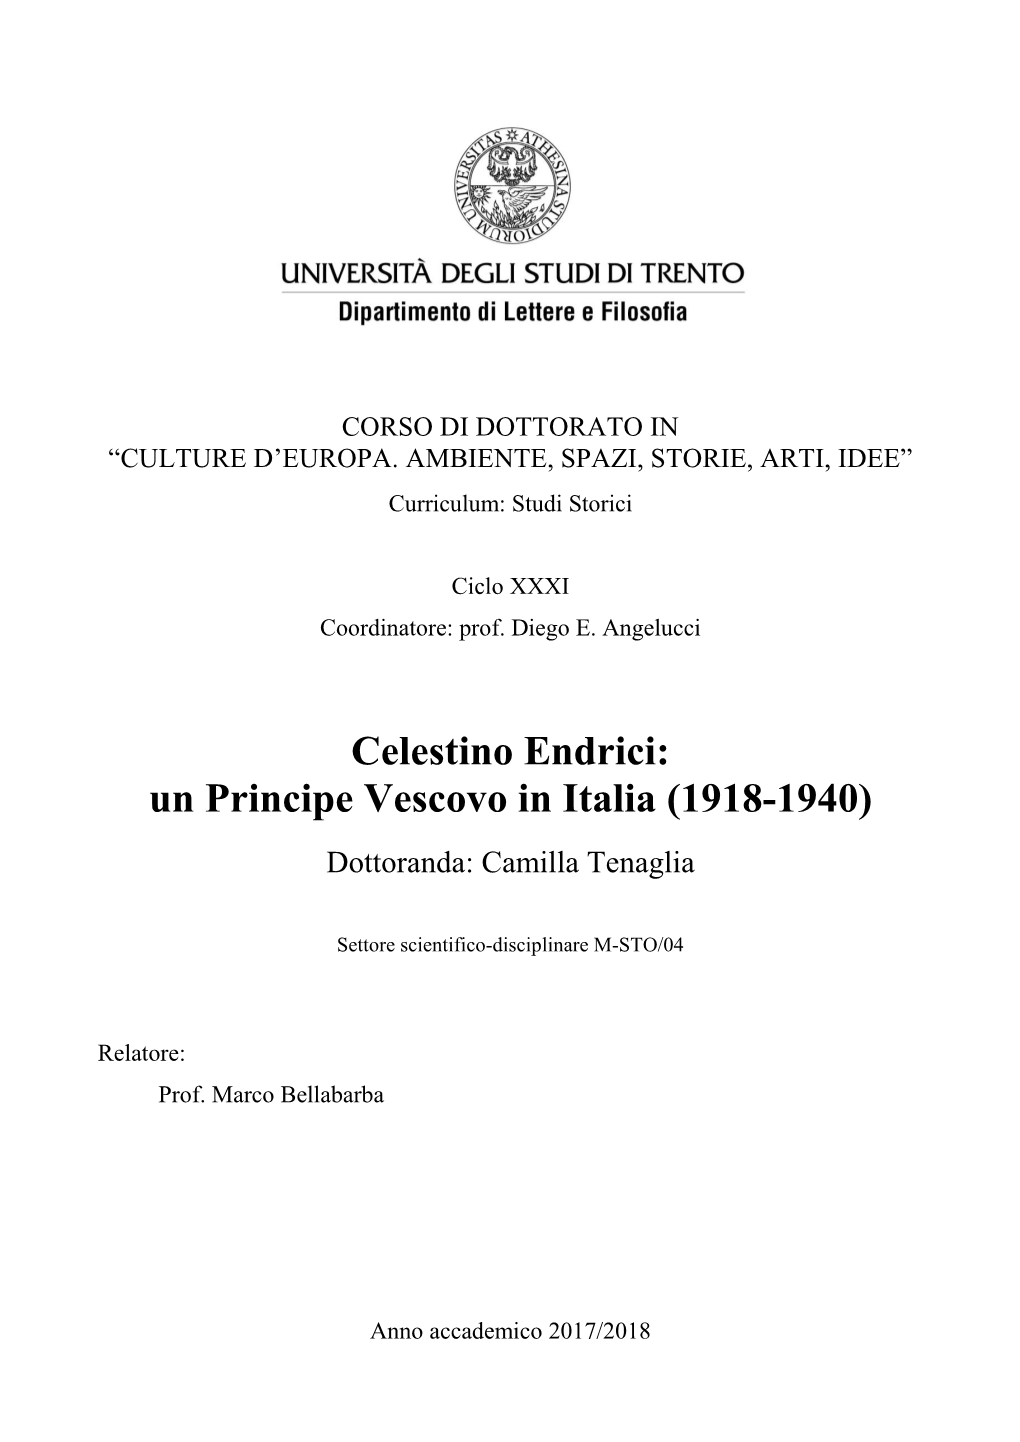 Celestino Endrici: Un Principe Vescovo in Italia (1918-1940) Dottoranda: Camilla Tenaglia